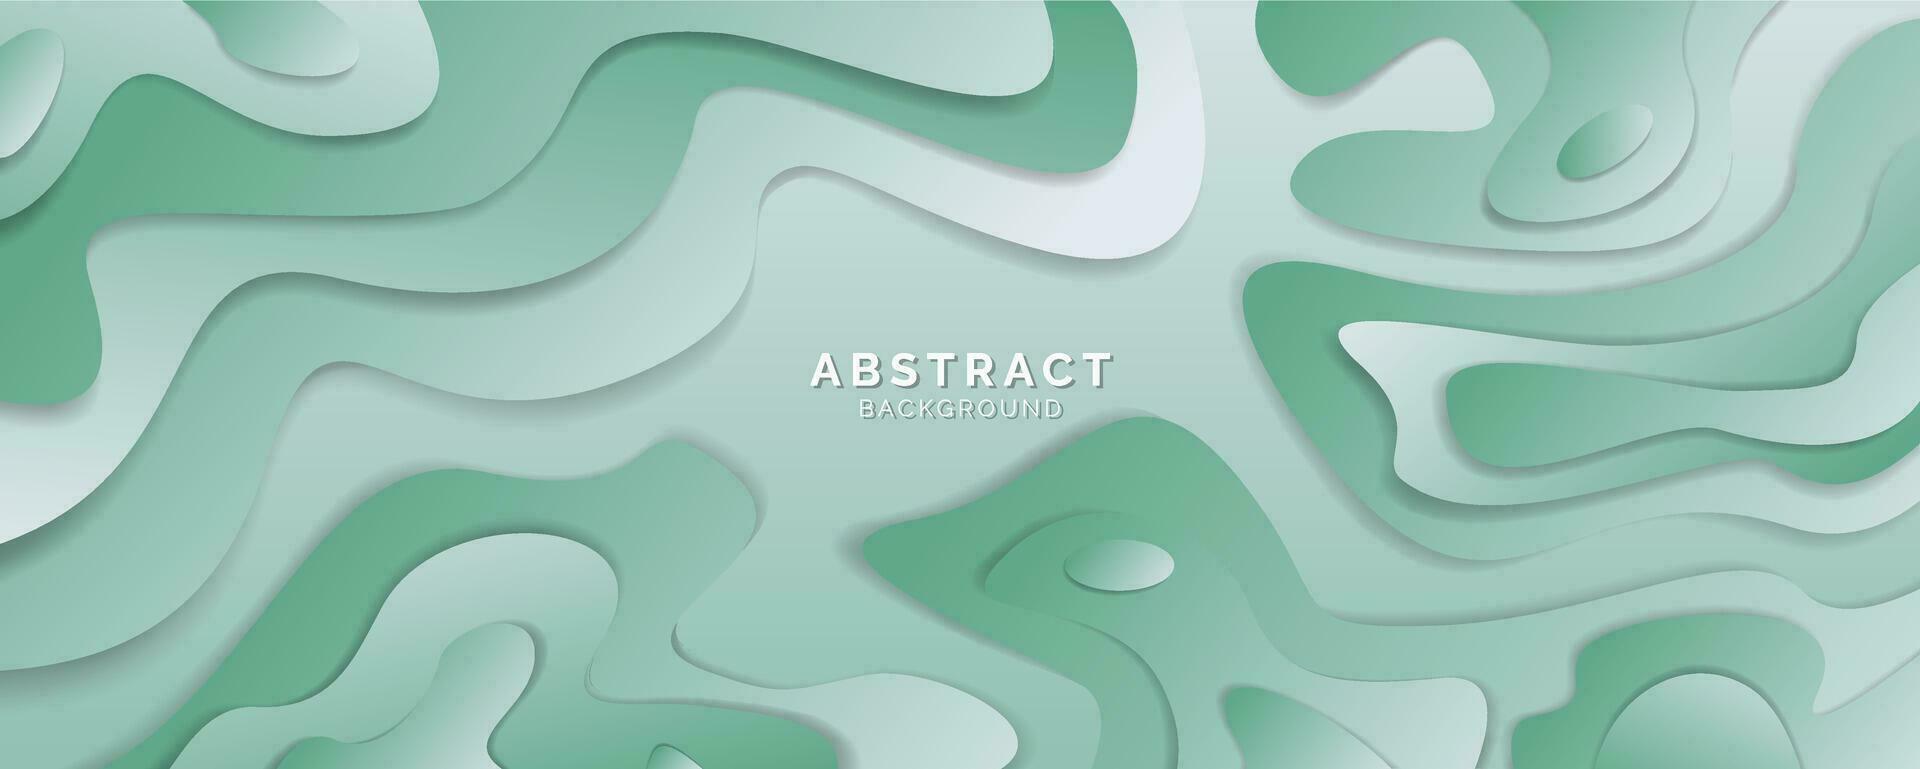 abstrakt bakgrund flytande form hav grön sammansättning, modern mall för hemsida, baner konst, affisch design, vektor illustration